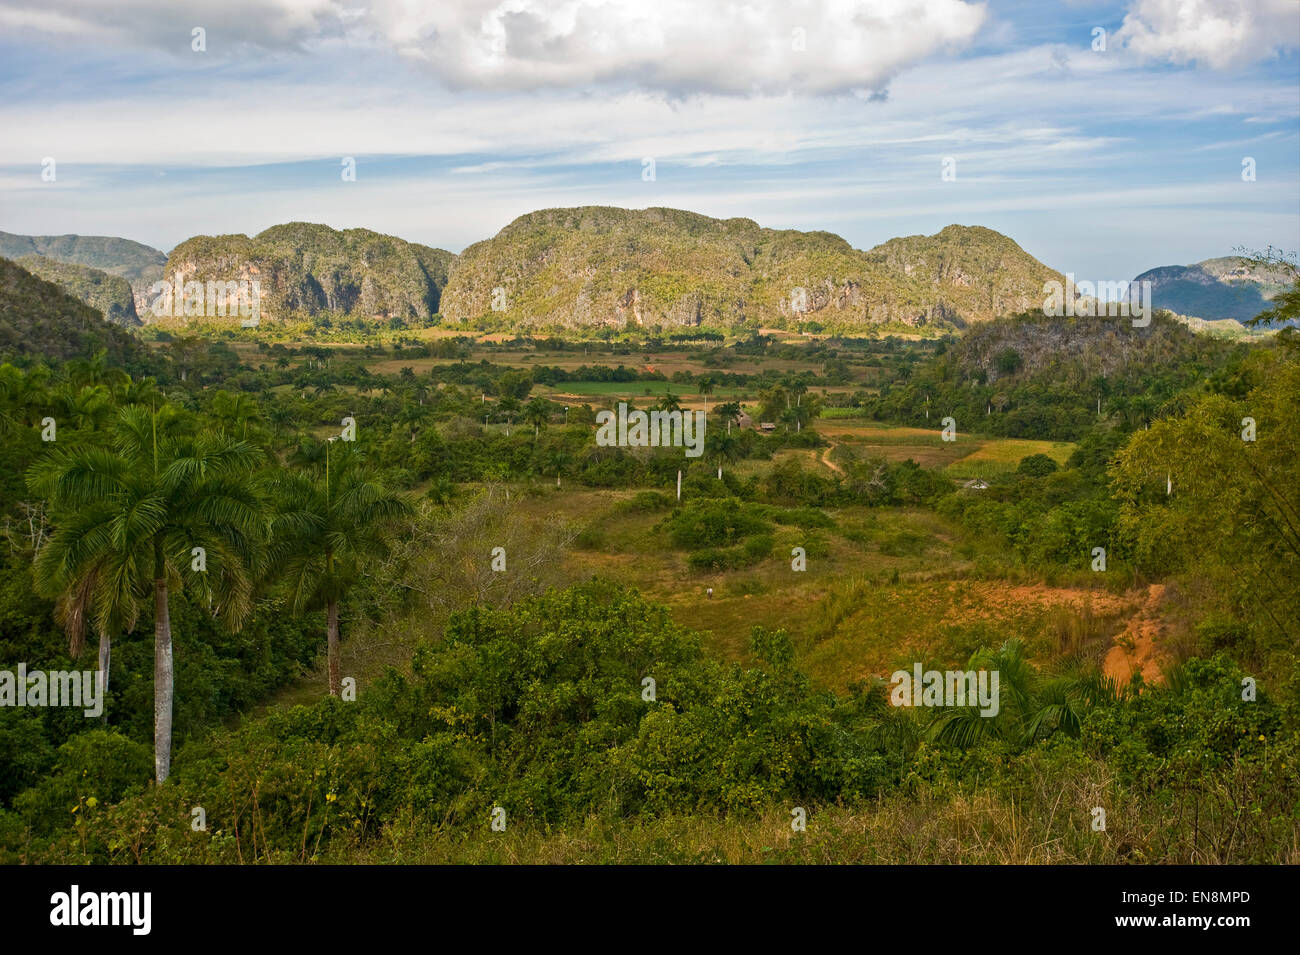 Vista horizontal del impresionante paisaje de Viñales. Foto de stock